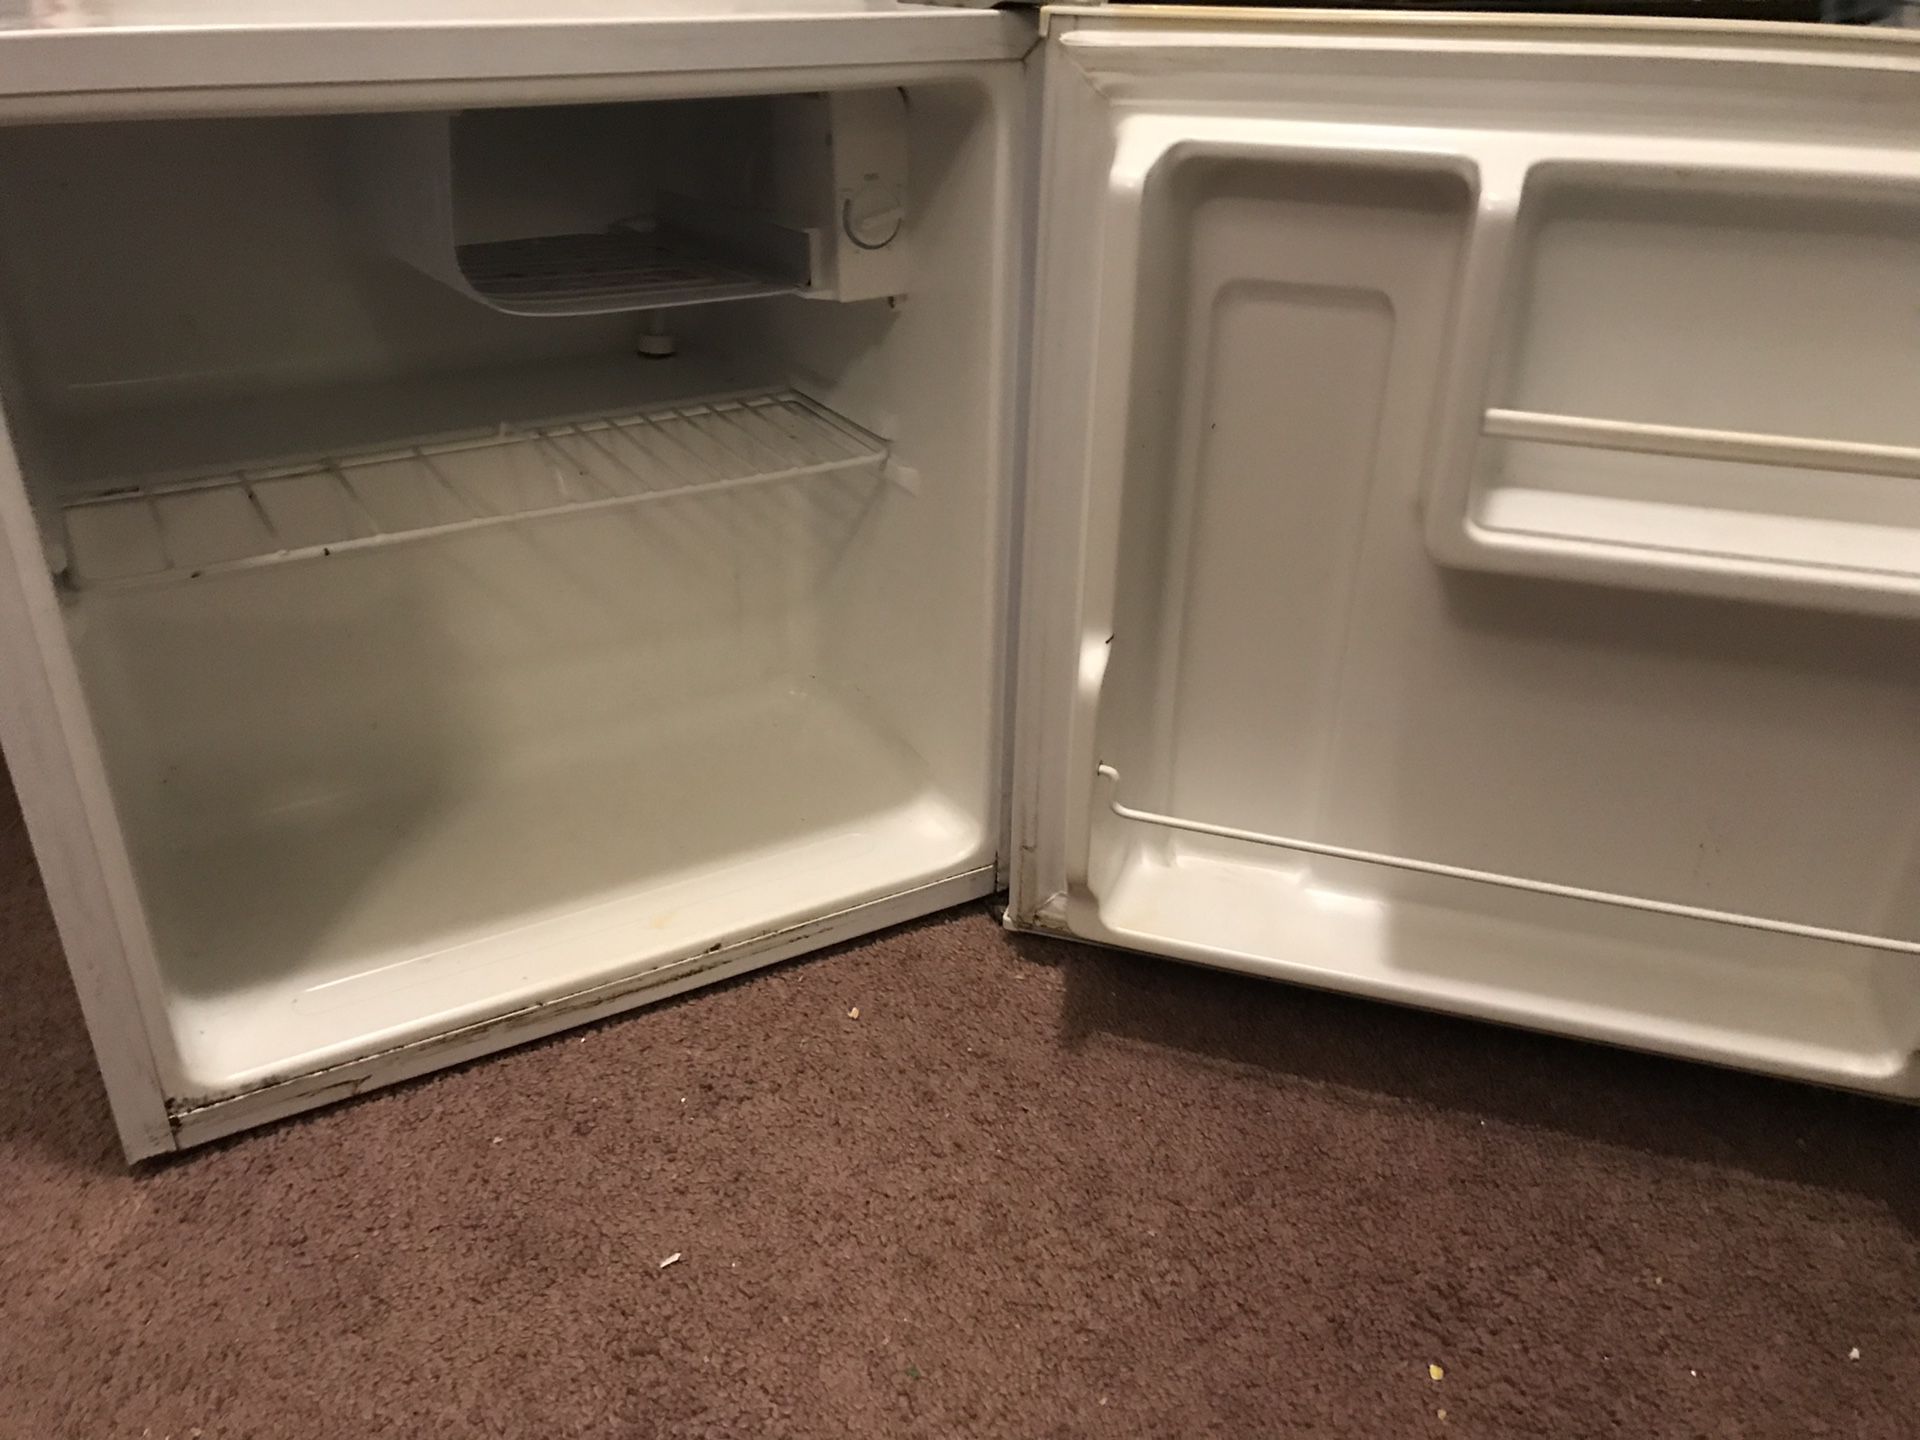 Mini fridge ideal for room